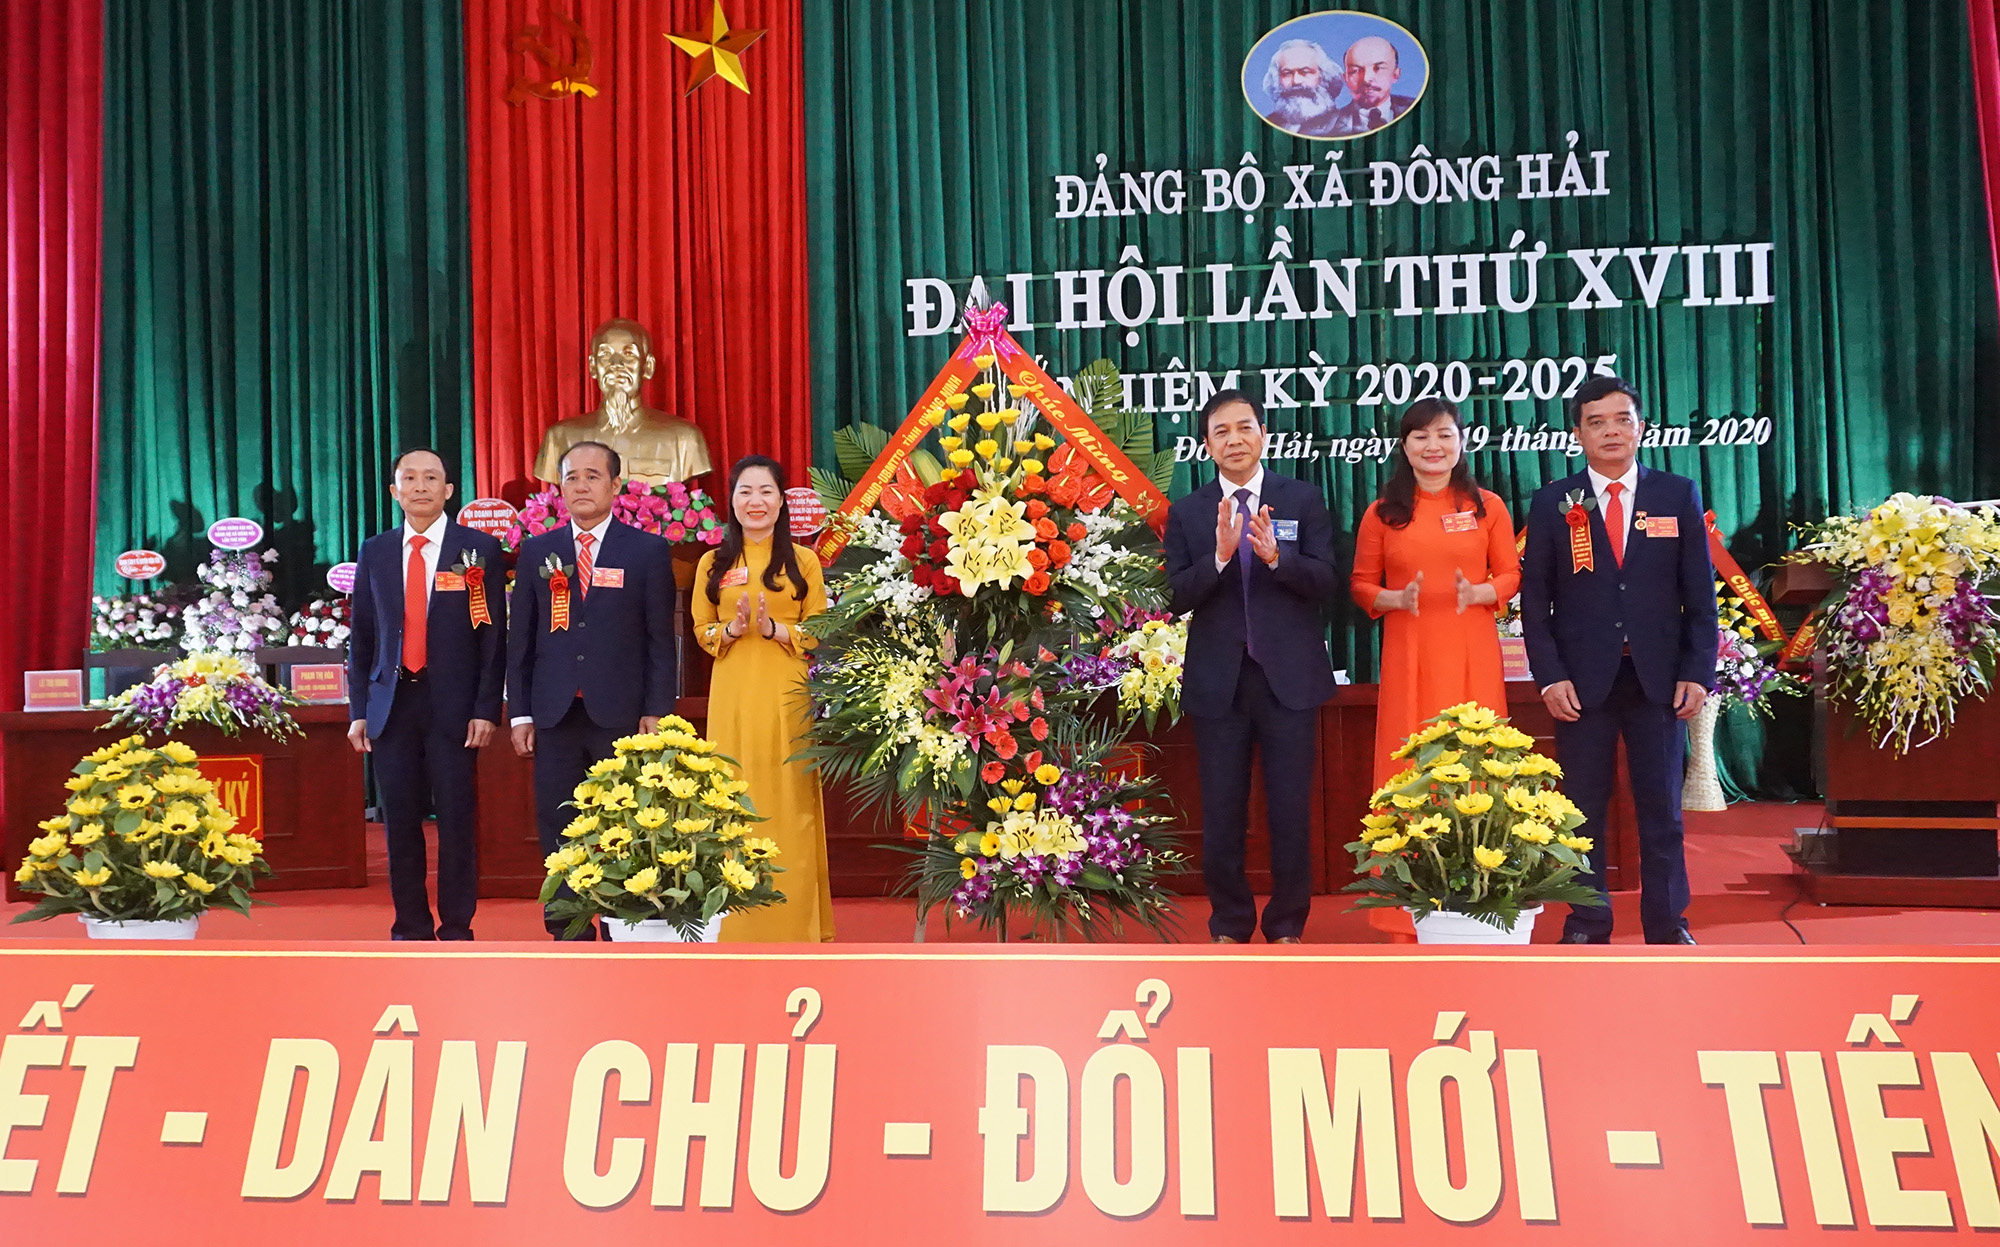 Đồng chí Đặng Huy Hậu, Ủy viên Ban Thường vụ Tỉnh ủy, Phó Chủ tịch Thường trực UBND tỉnh, tặng hoa chúc mừng Đảng bộ xã Đông Hải